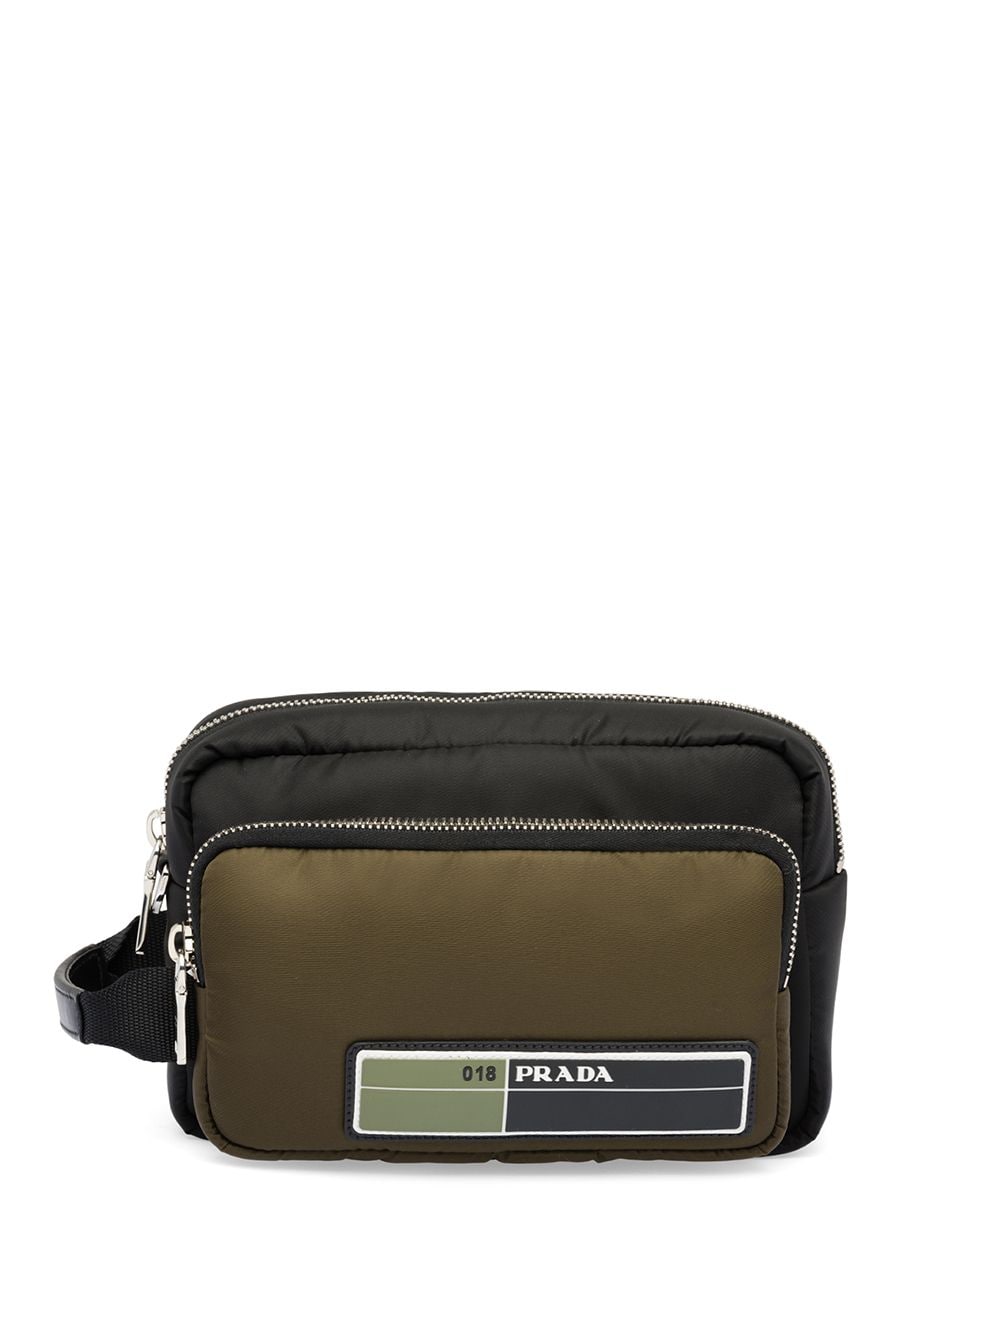 фото Prada сумка с карманами и нашивкой-логотипом